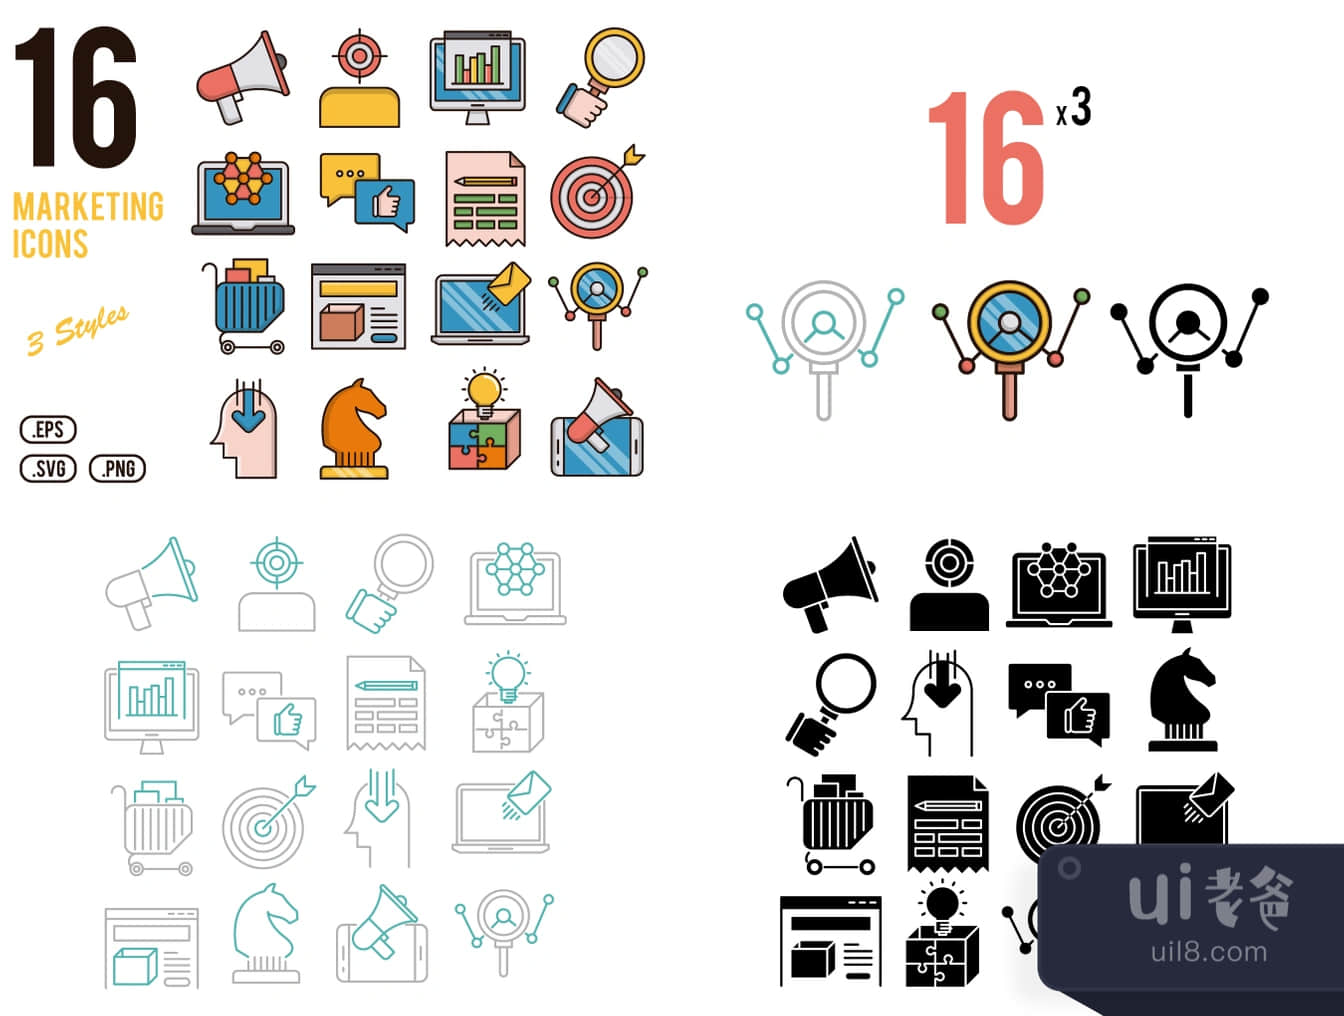 16个营销图标 (16 Marketing Icons)插图